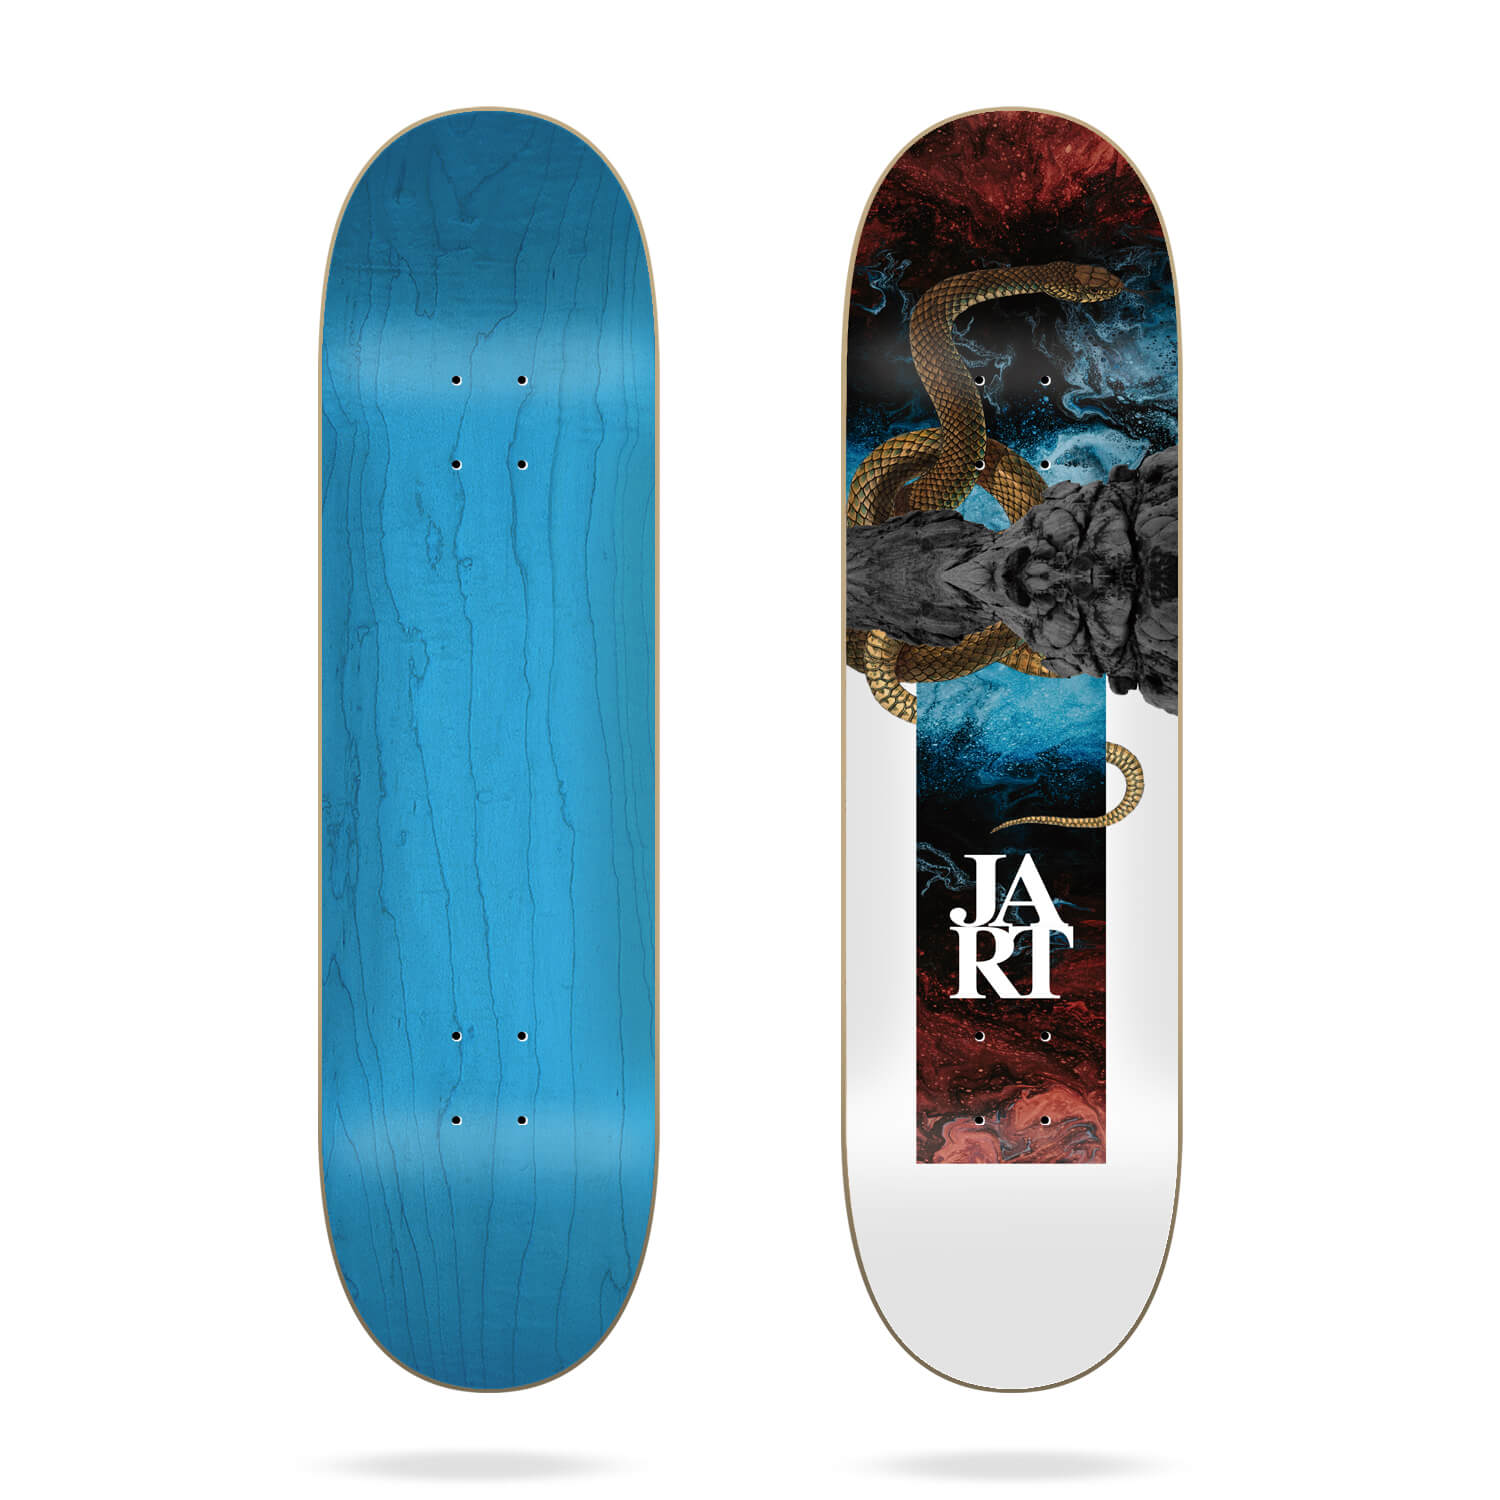 Jart Abstraction 8.25" skateboard deck